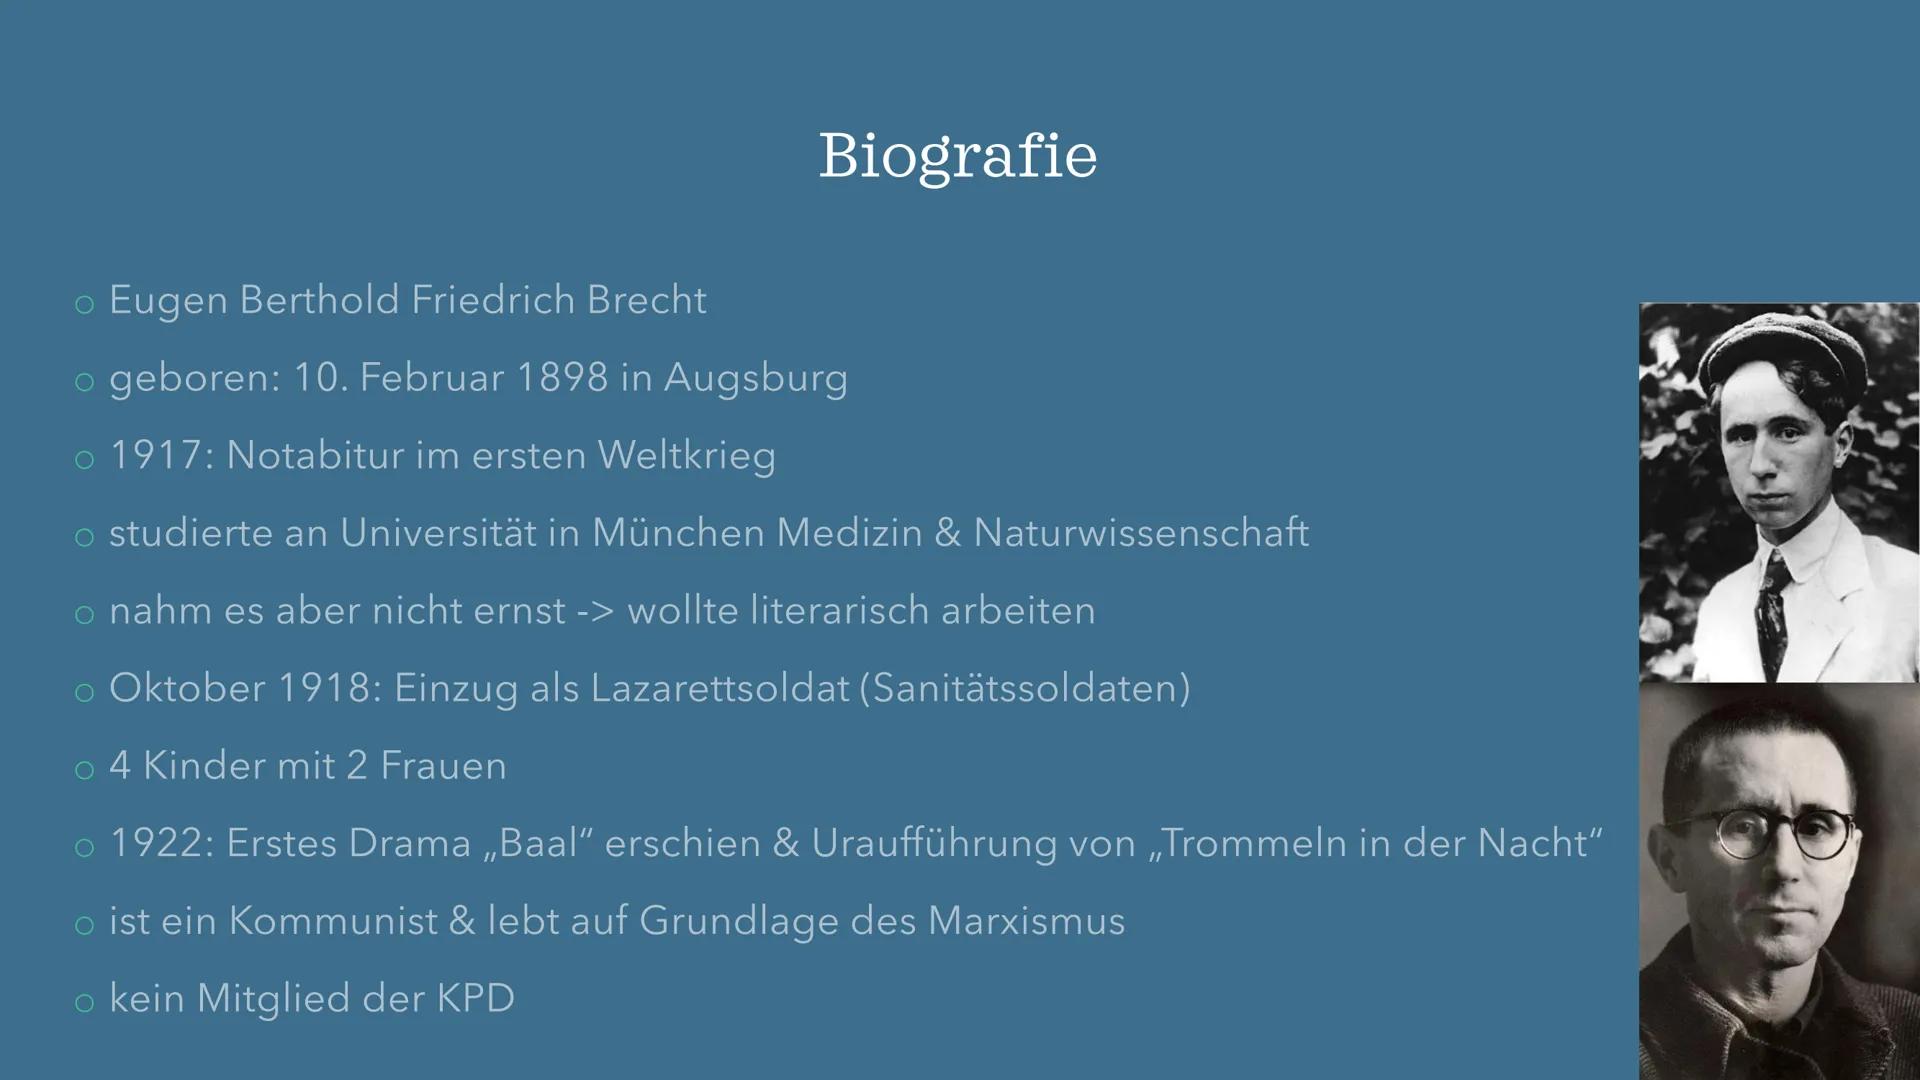 
<h2 id="biografie">Biografie</h2>
<p>Eugen Berthold Friedrich Brecht wurde am 10. Februar 1898 in Augsburg geboren. Er absolvierte 1917 sei